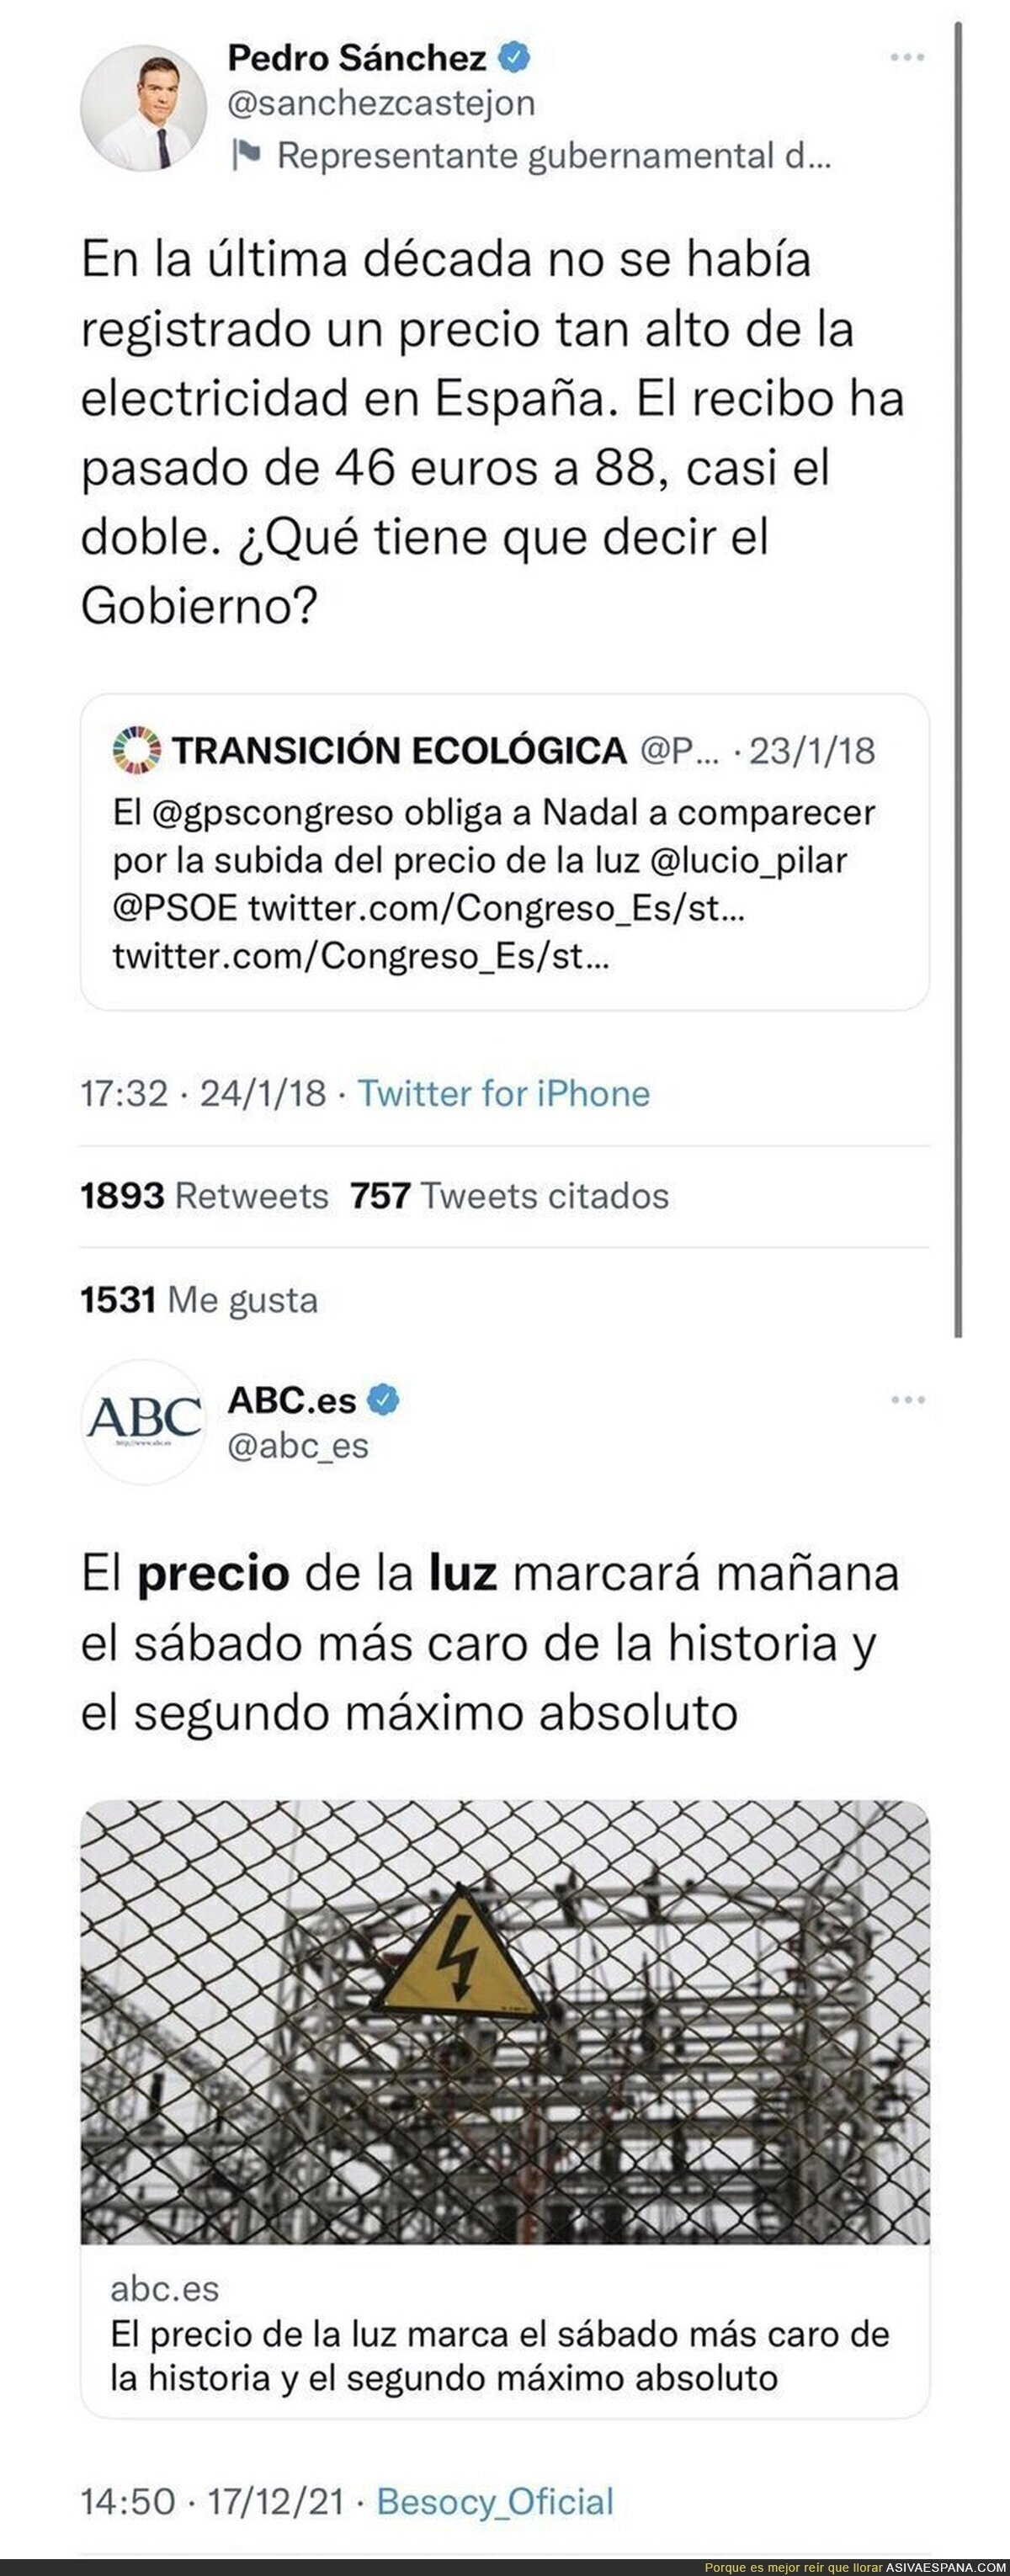 Pedro Sánchez queda retratado con este tuit del pasado sobre el precio de la electricidad